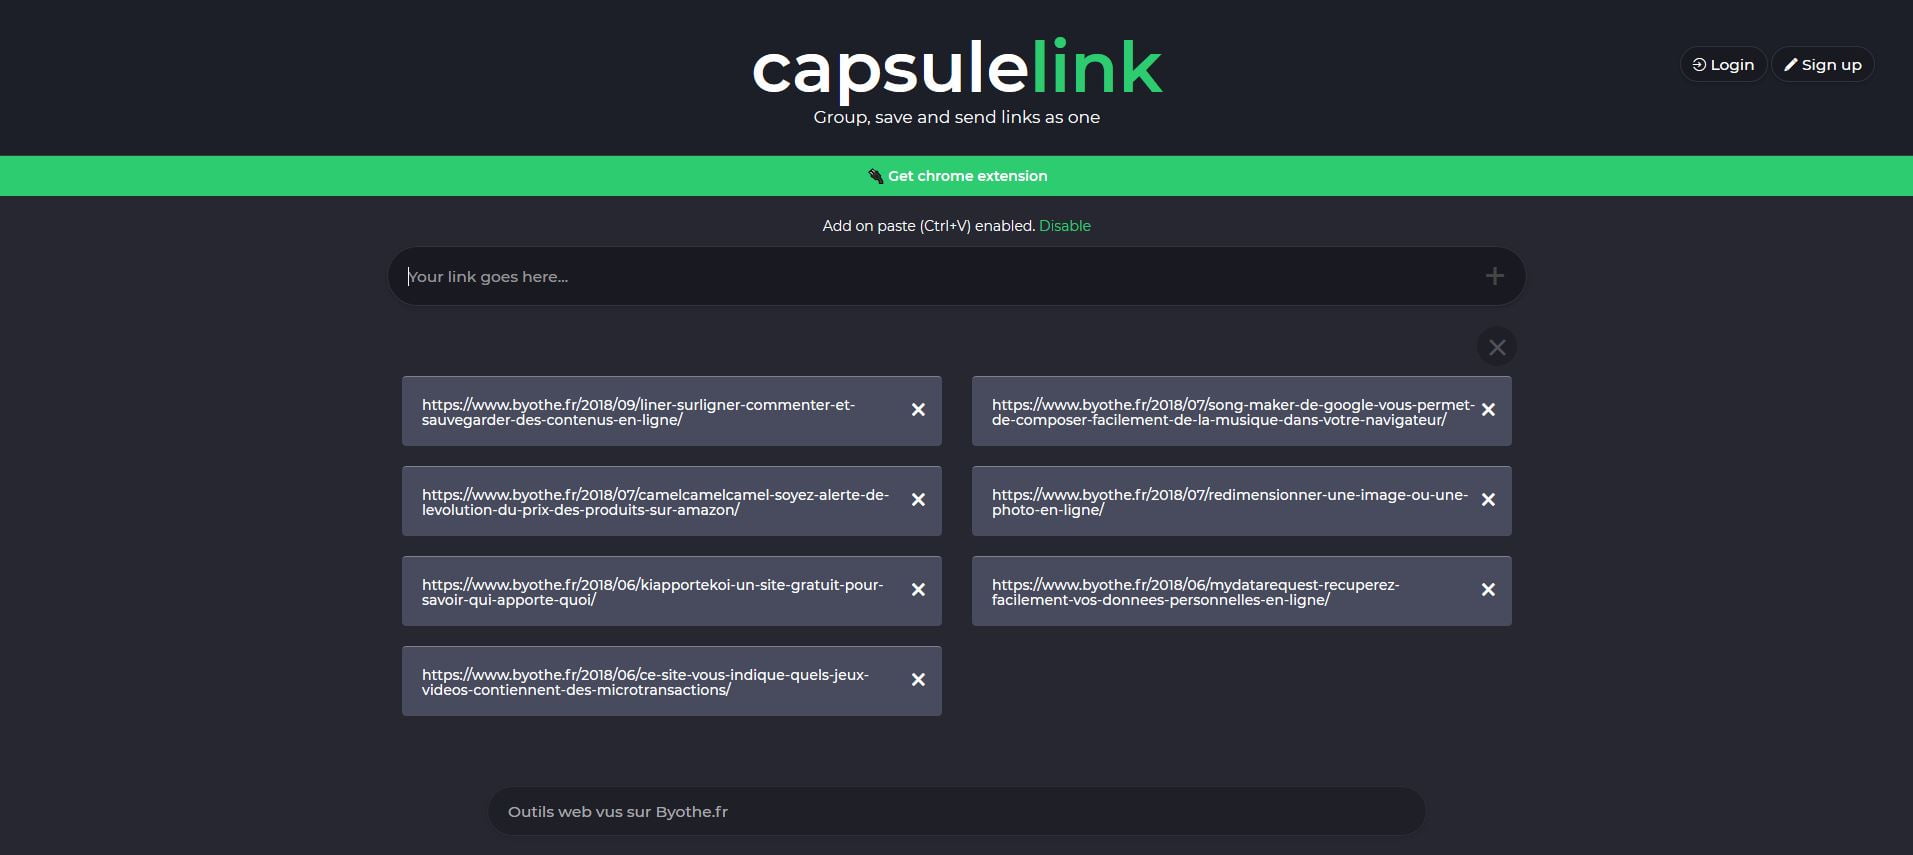 capsulelink | Le top 20 des outils et sites web 2018 sur Byothe.fr !